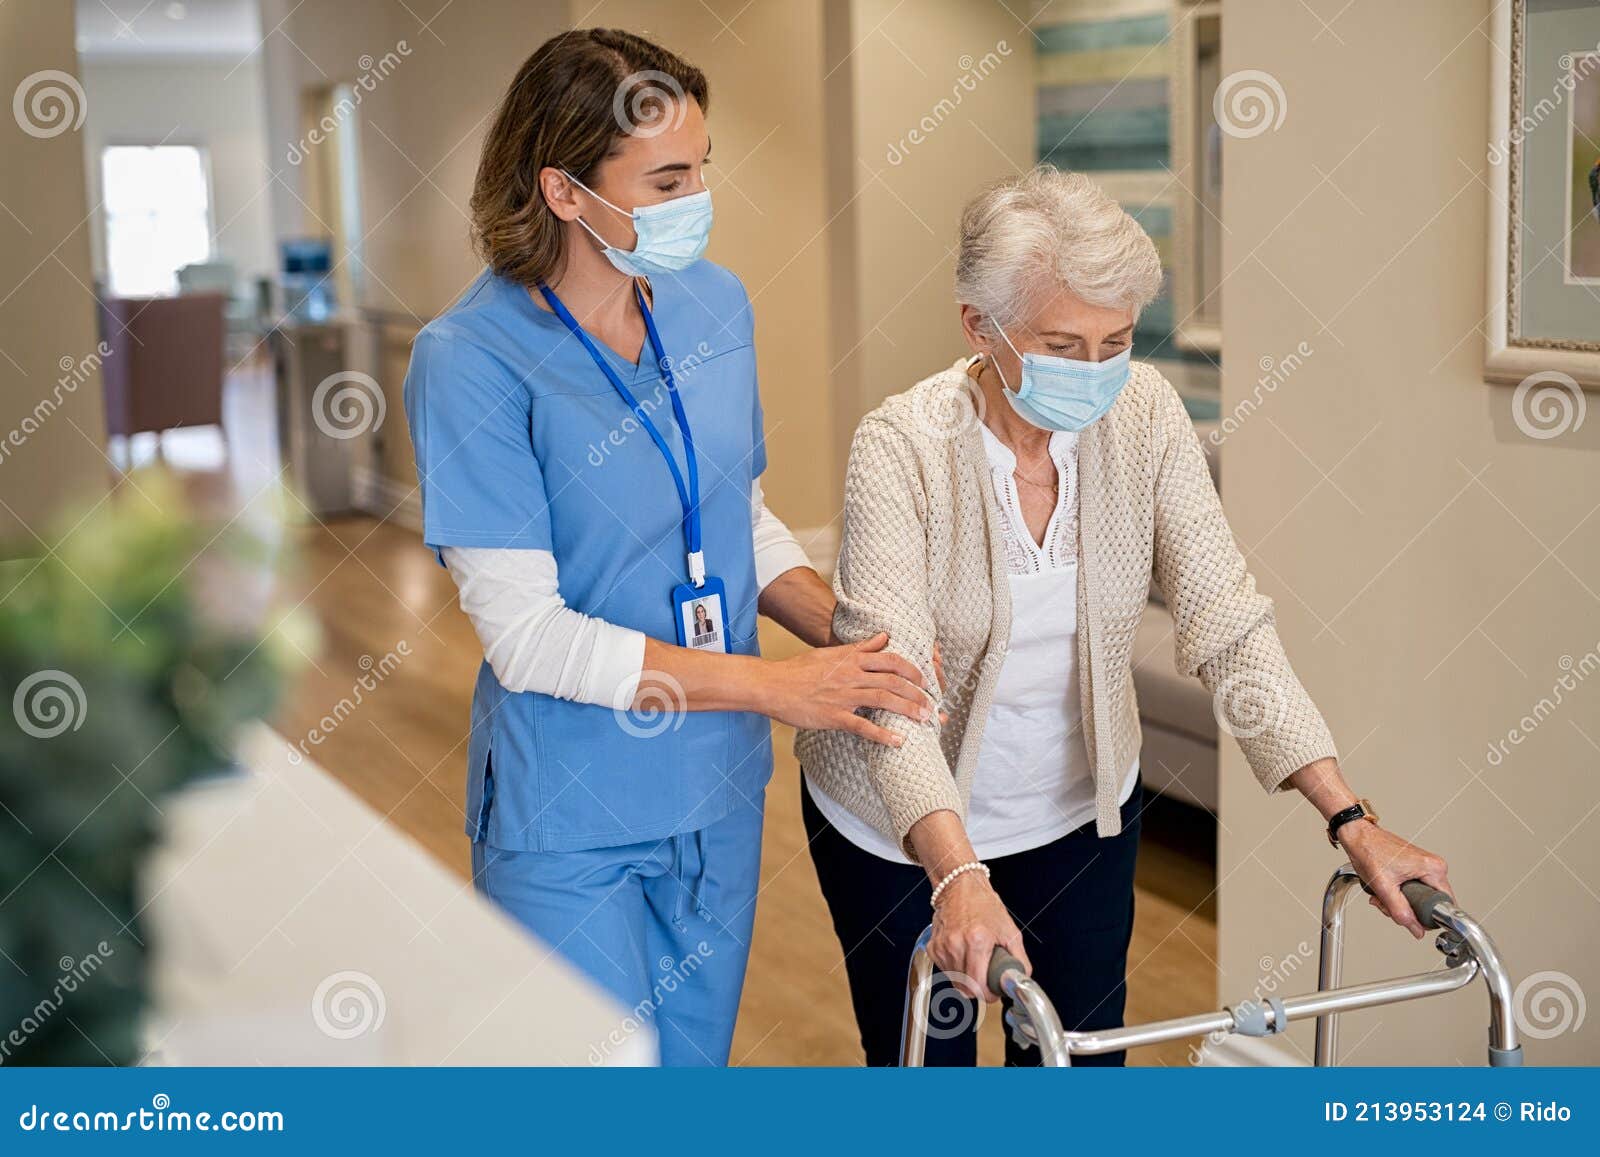 nurse helping senior woman walk at nursing home